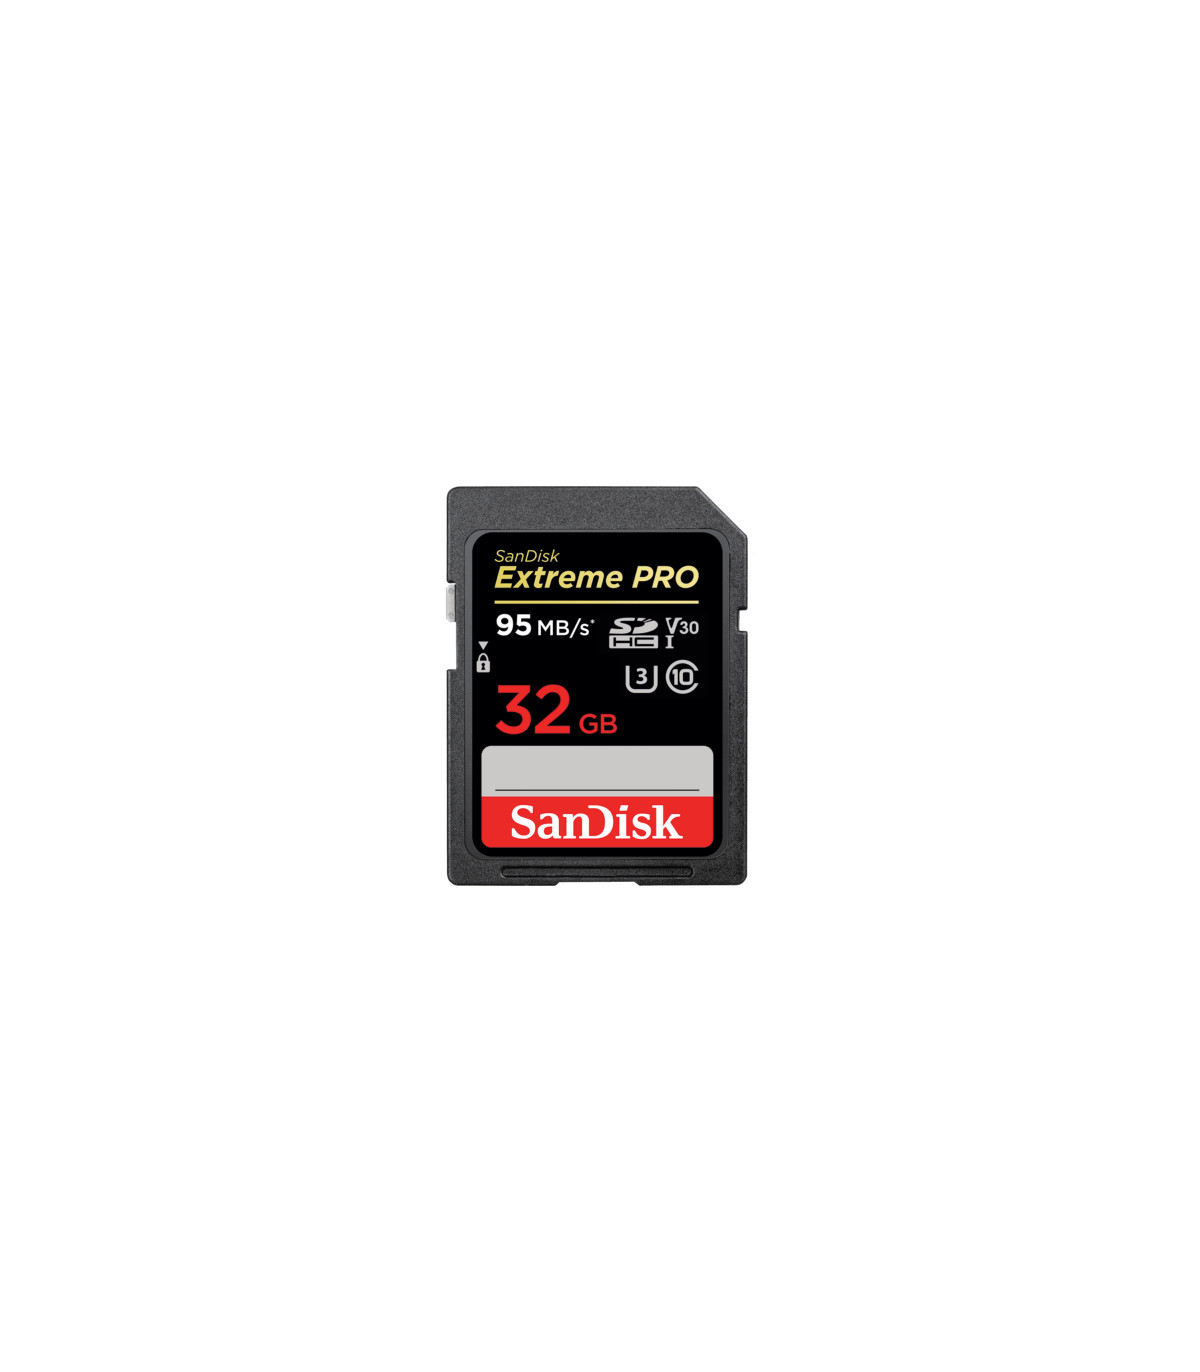 SANDISK SD EXTREME PRO 256GB (jusqu'à 200MB/S en lecture et 90MB/S en  écriture)